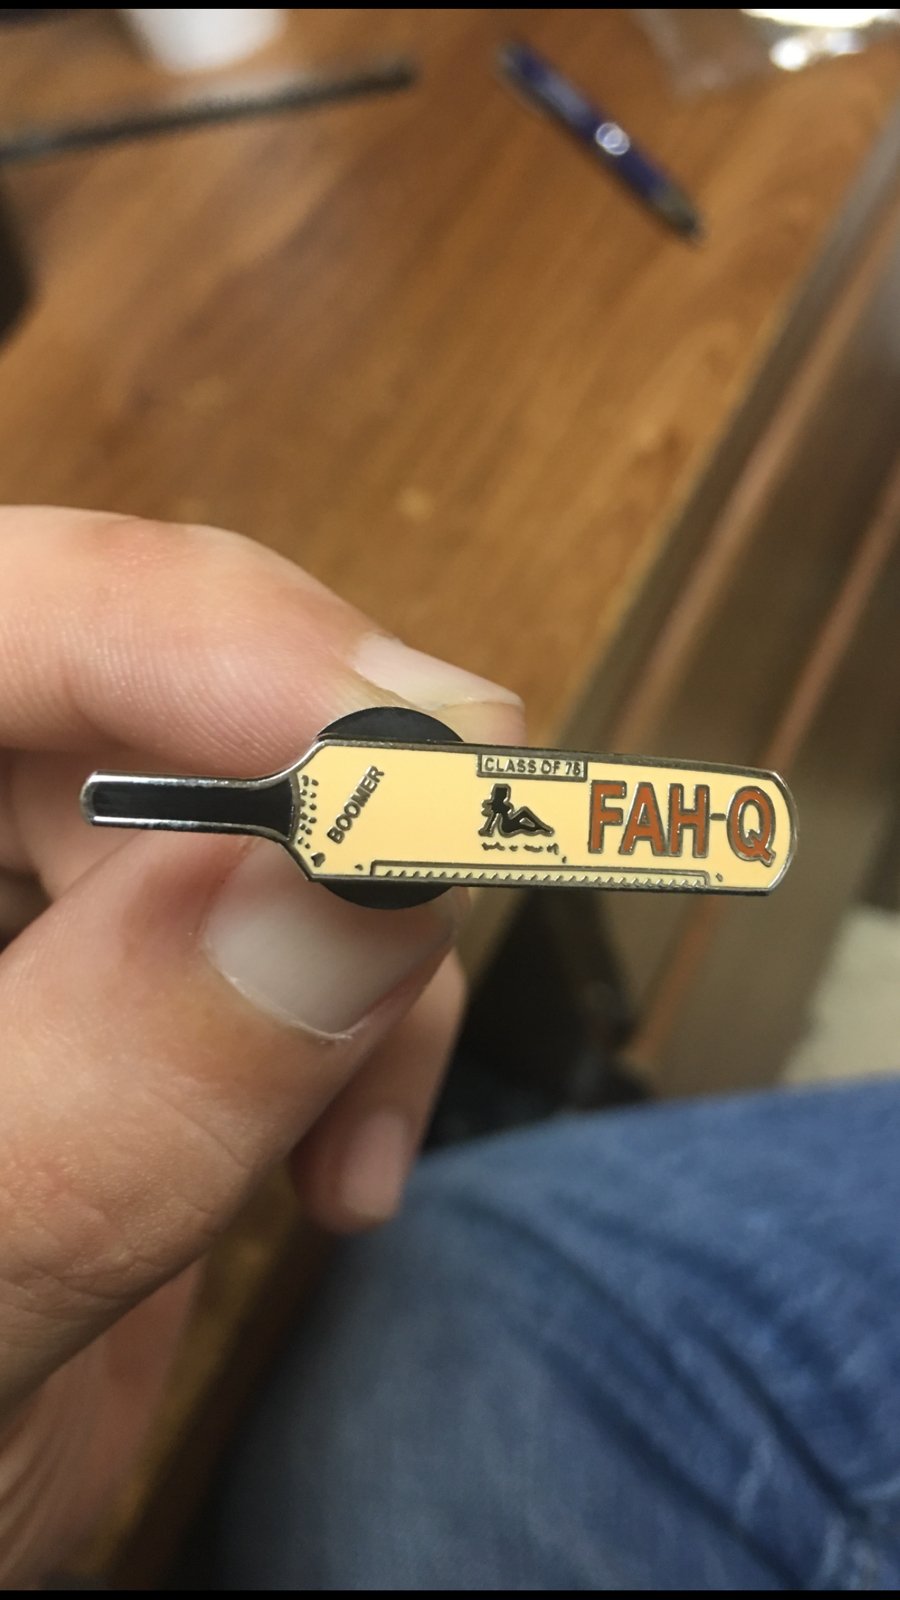 FAH-Q Lapel Pin